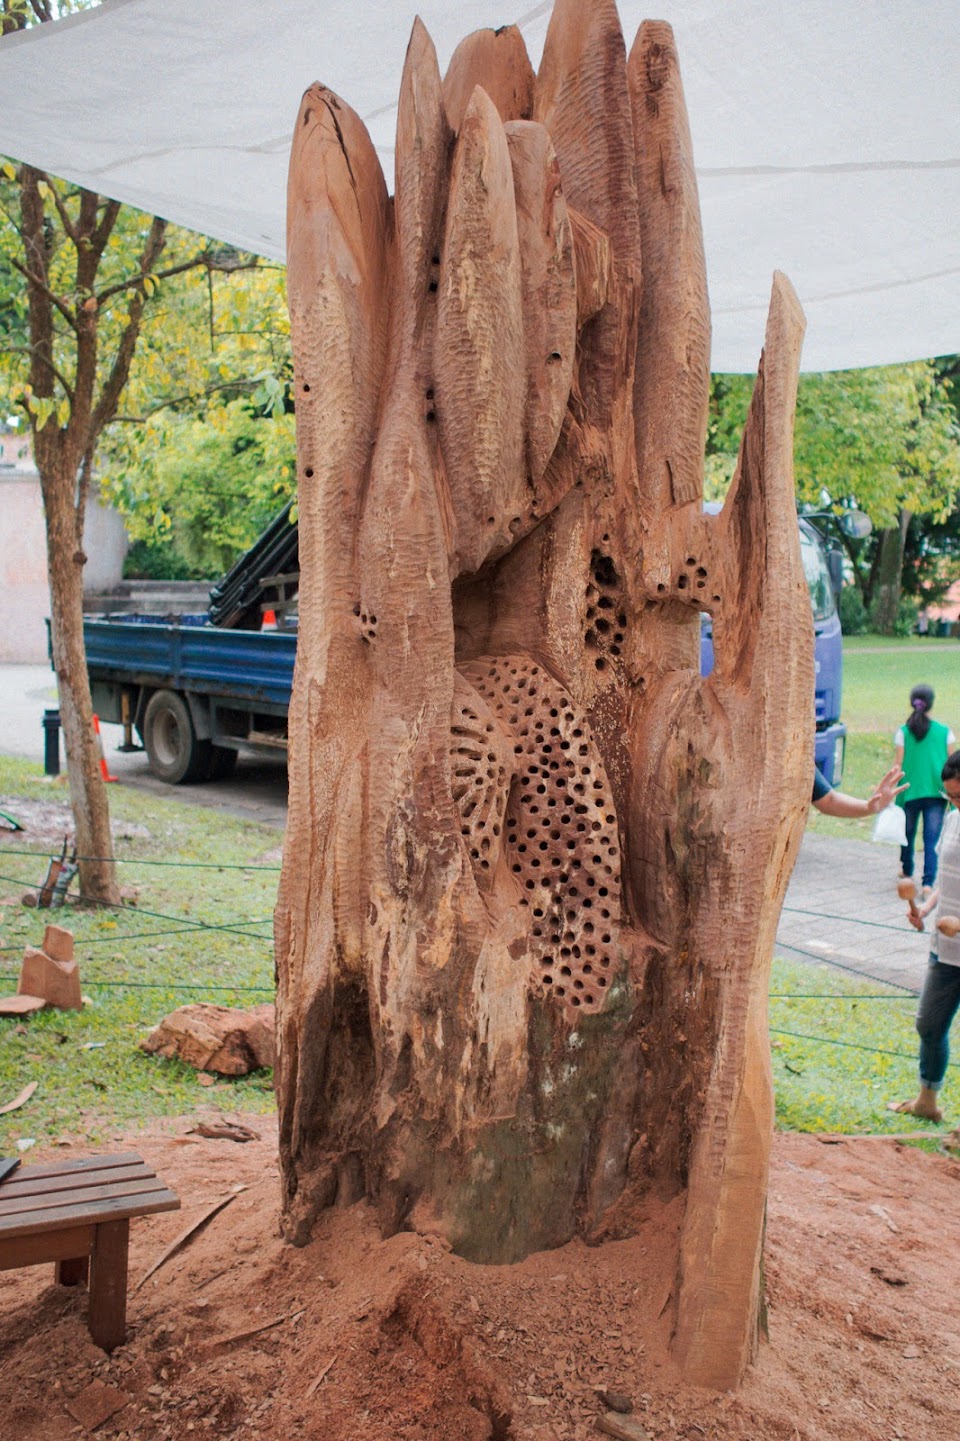 Wood Sculpture Symposium 2013